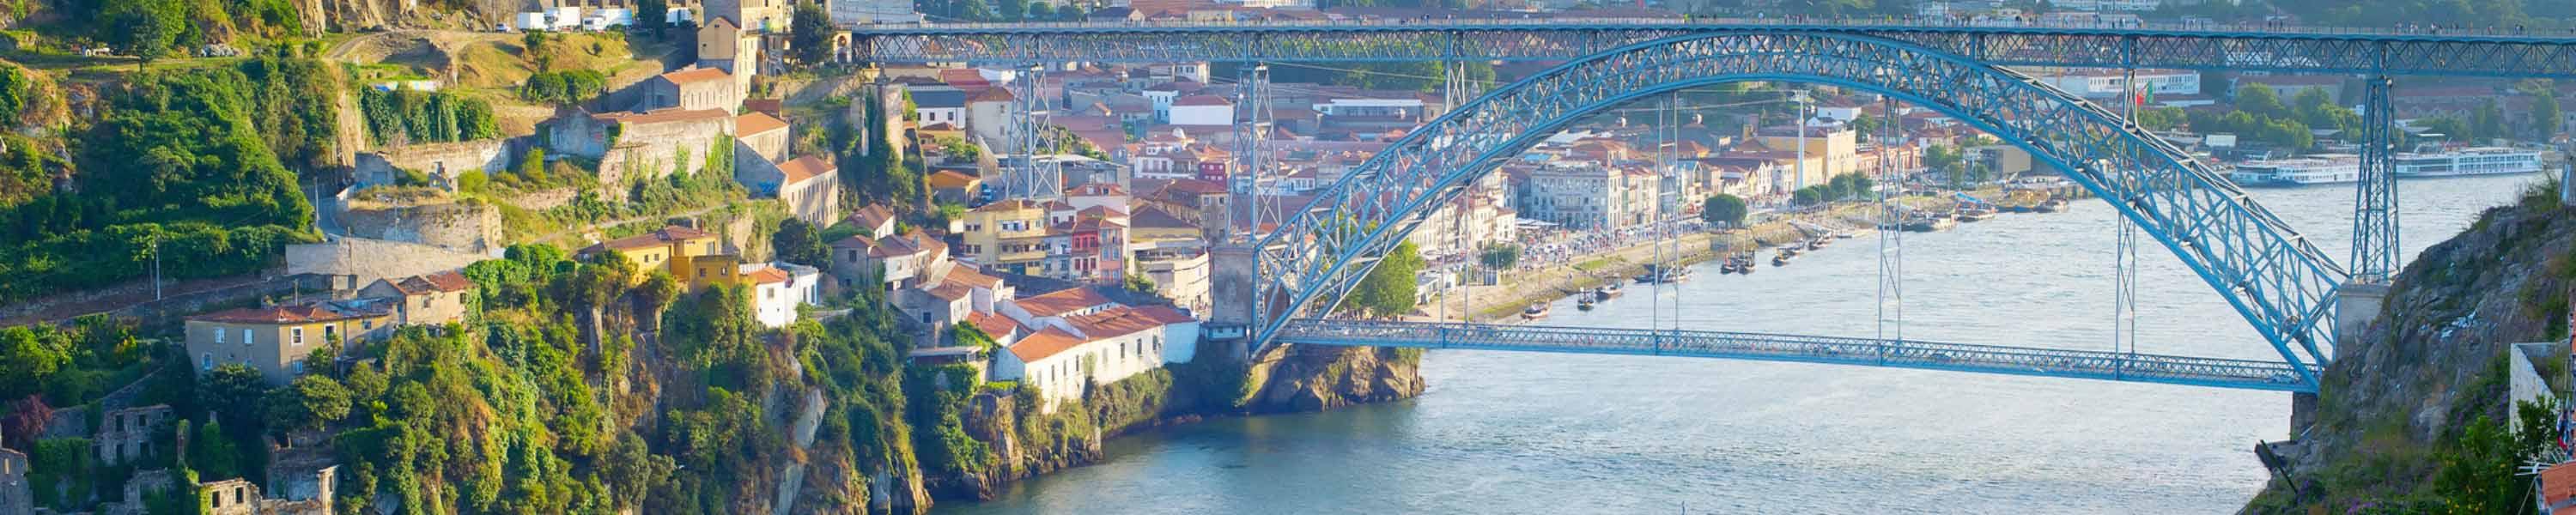 Douro river in Portugal